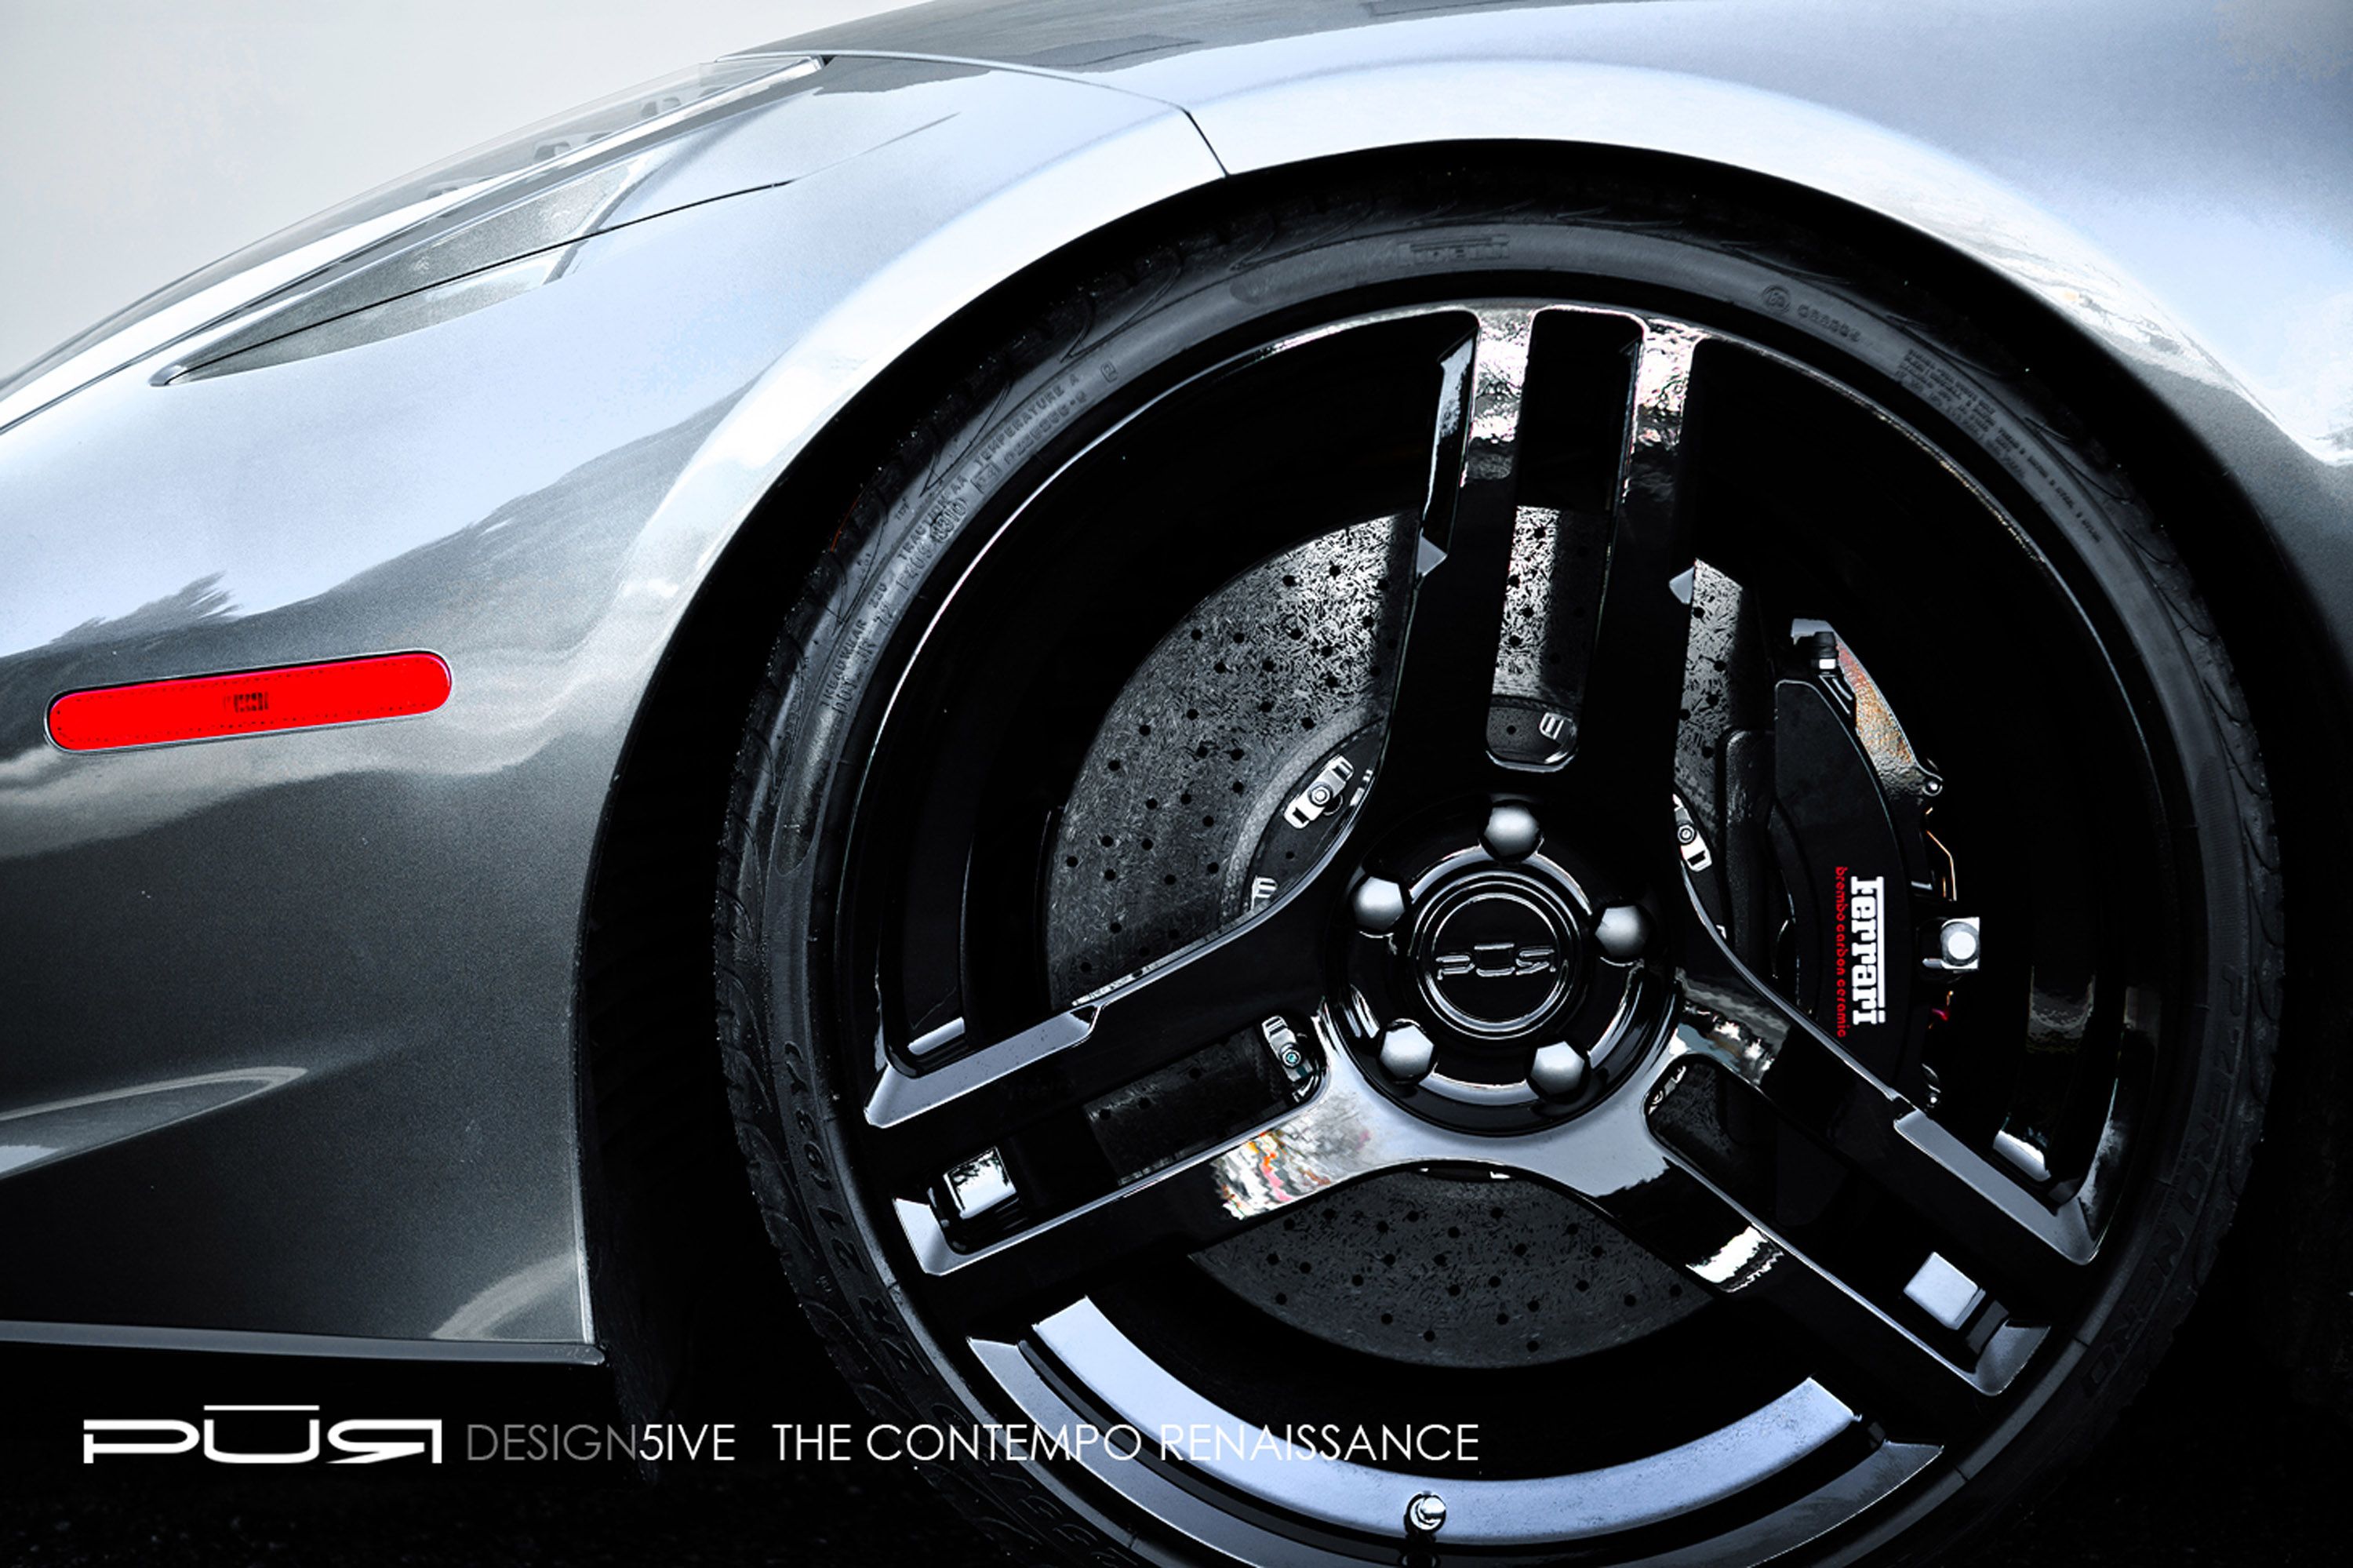 2012 Ferrari 458 Italia 'Design 5ive' SR Project Kiluminati by SR Auto Group and PUR Wheels